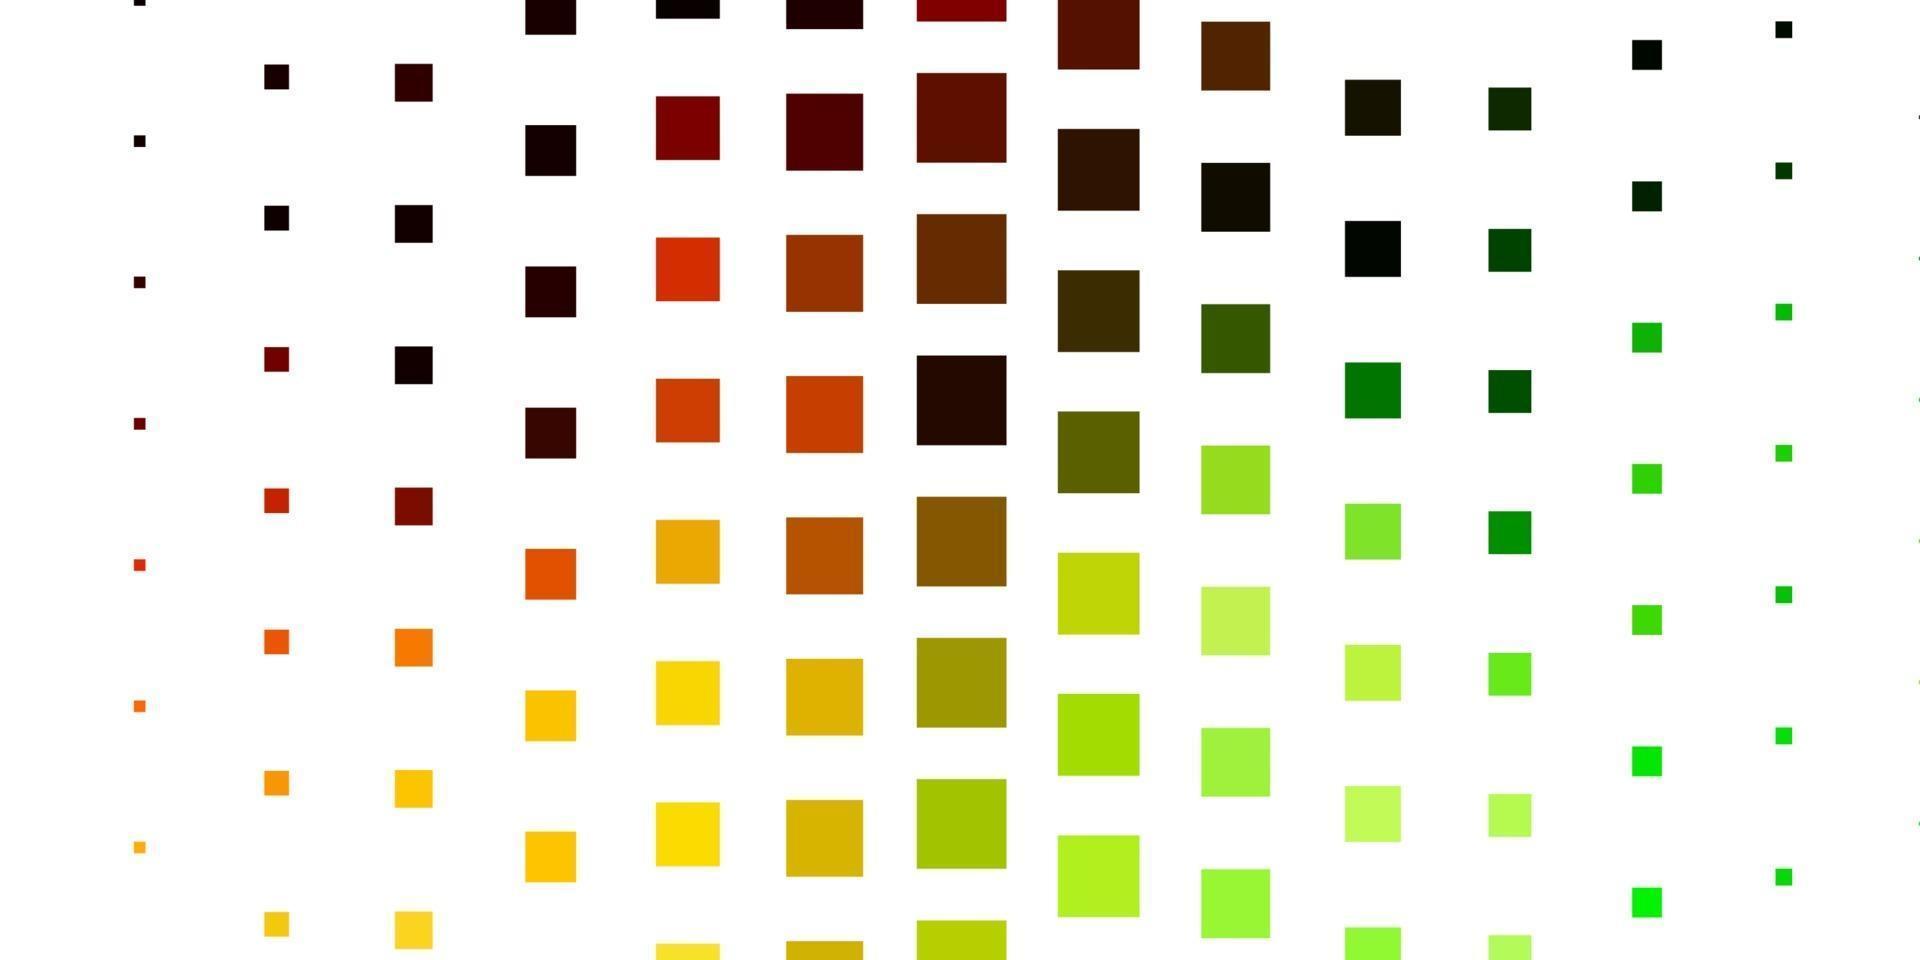 lichtgroen, geel vector sjabloon in rechthoeken.